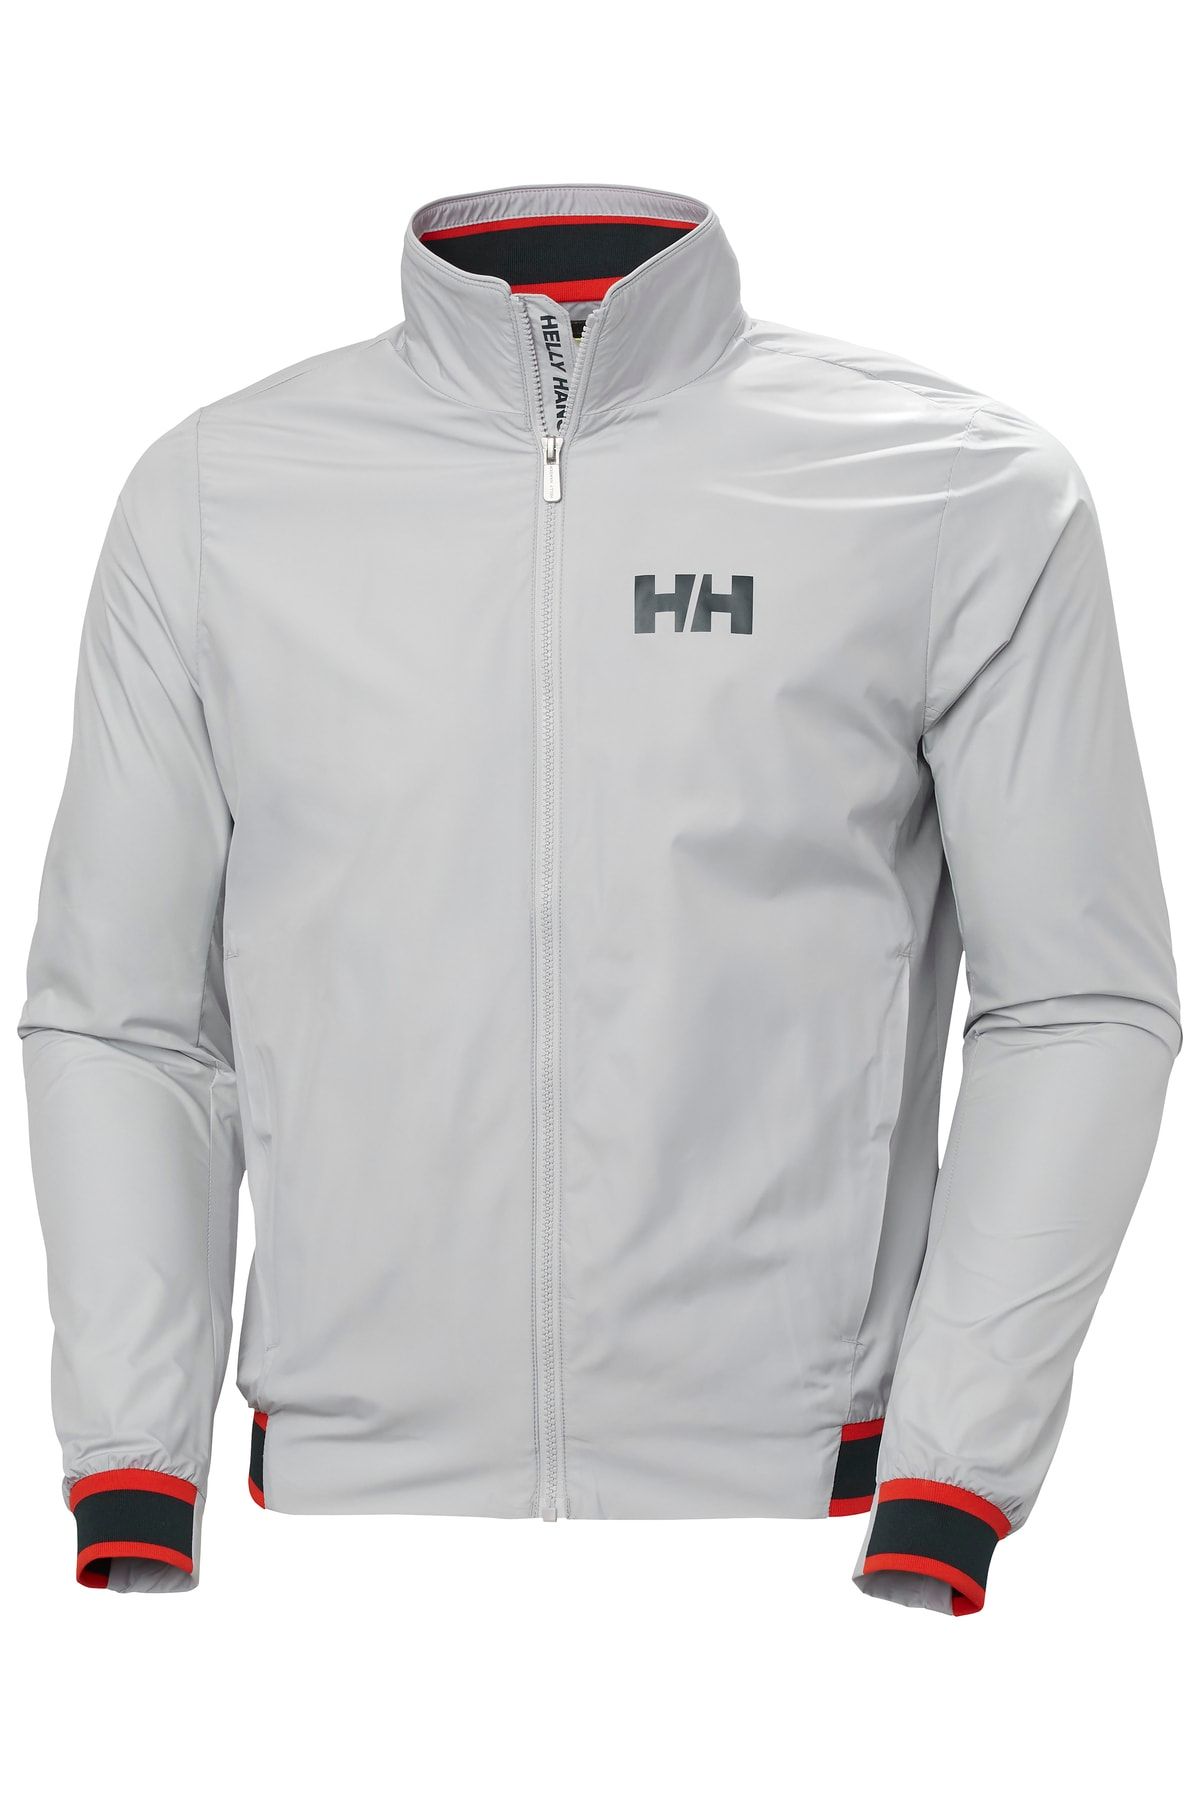 Helly Hansen Hh Salt Wındbreaker Jacket Erkek Ceket